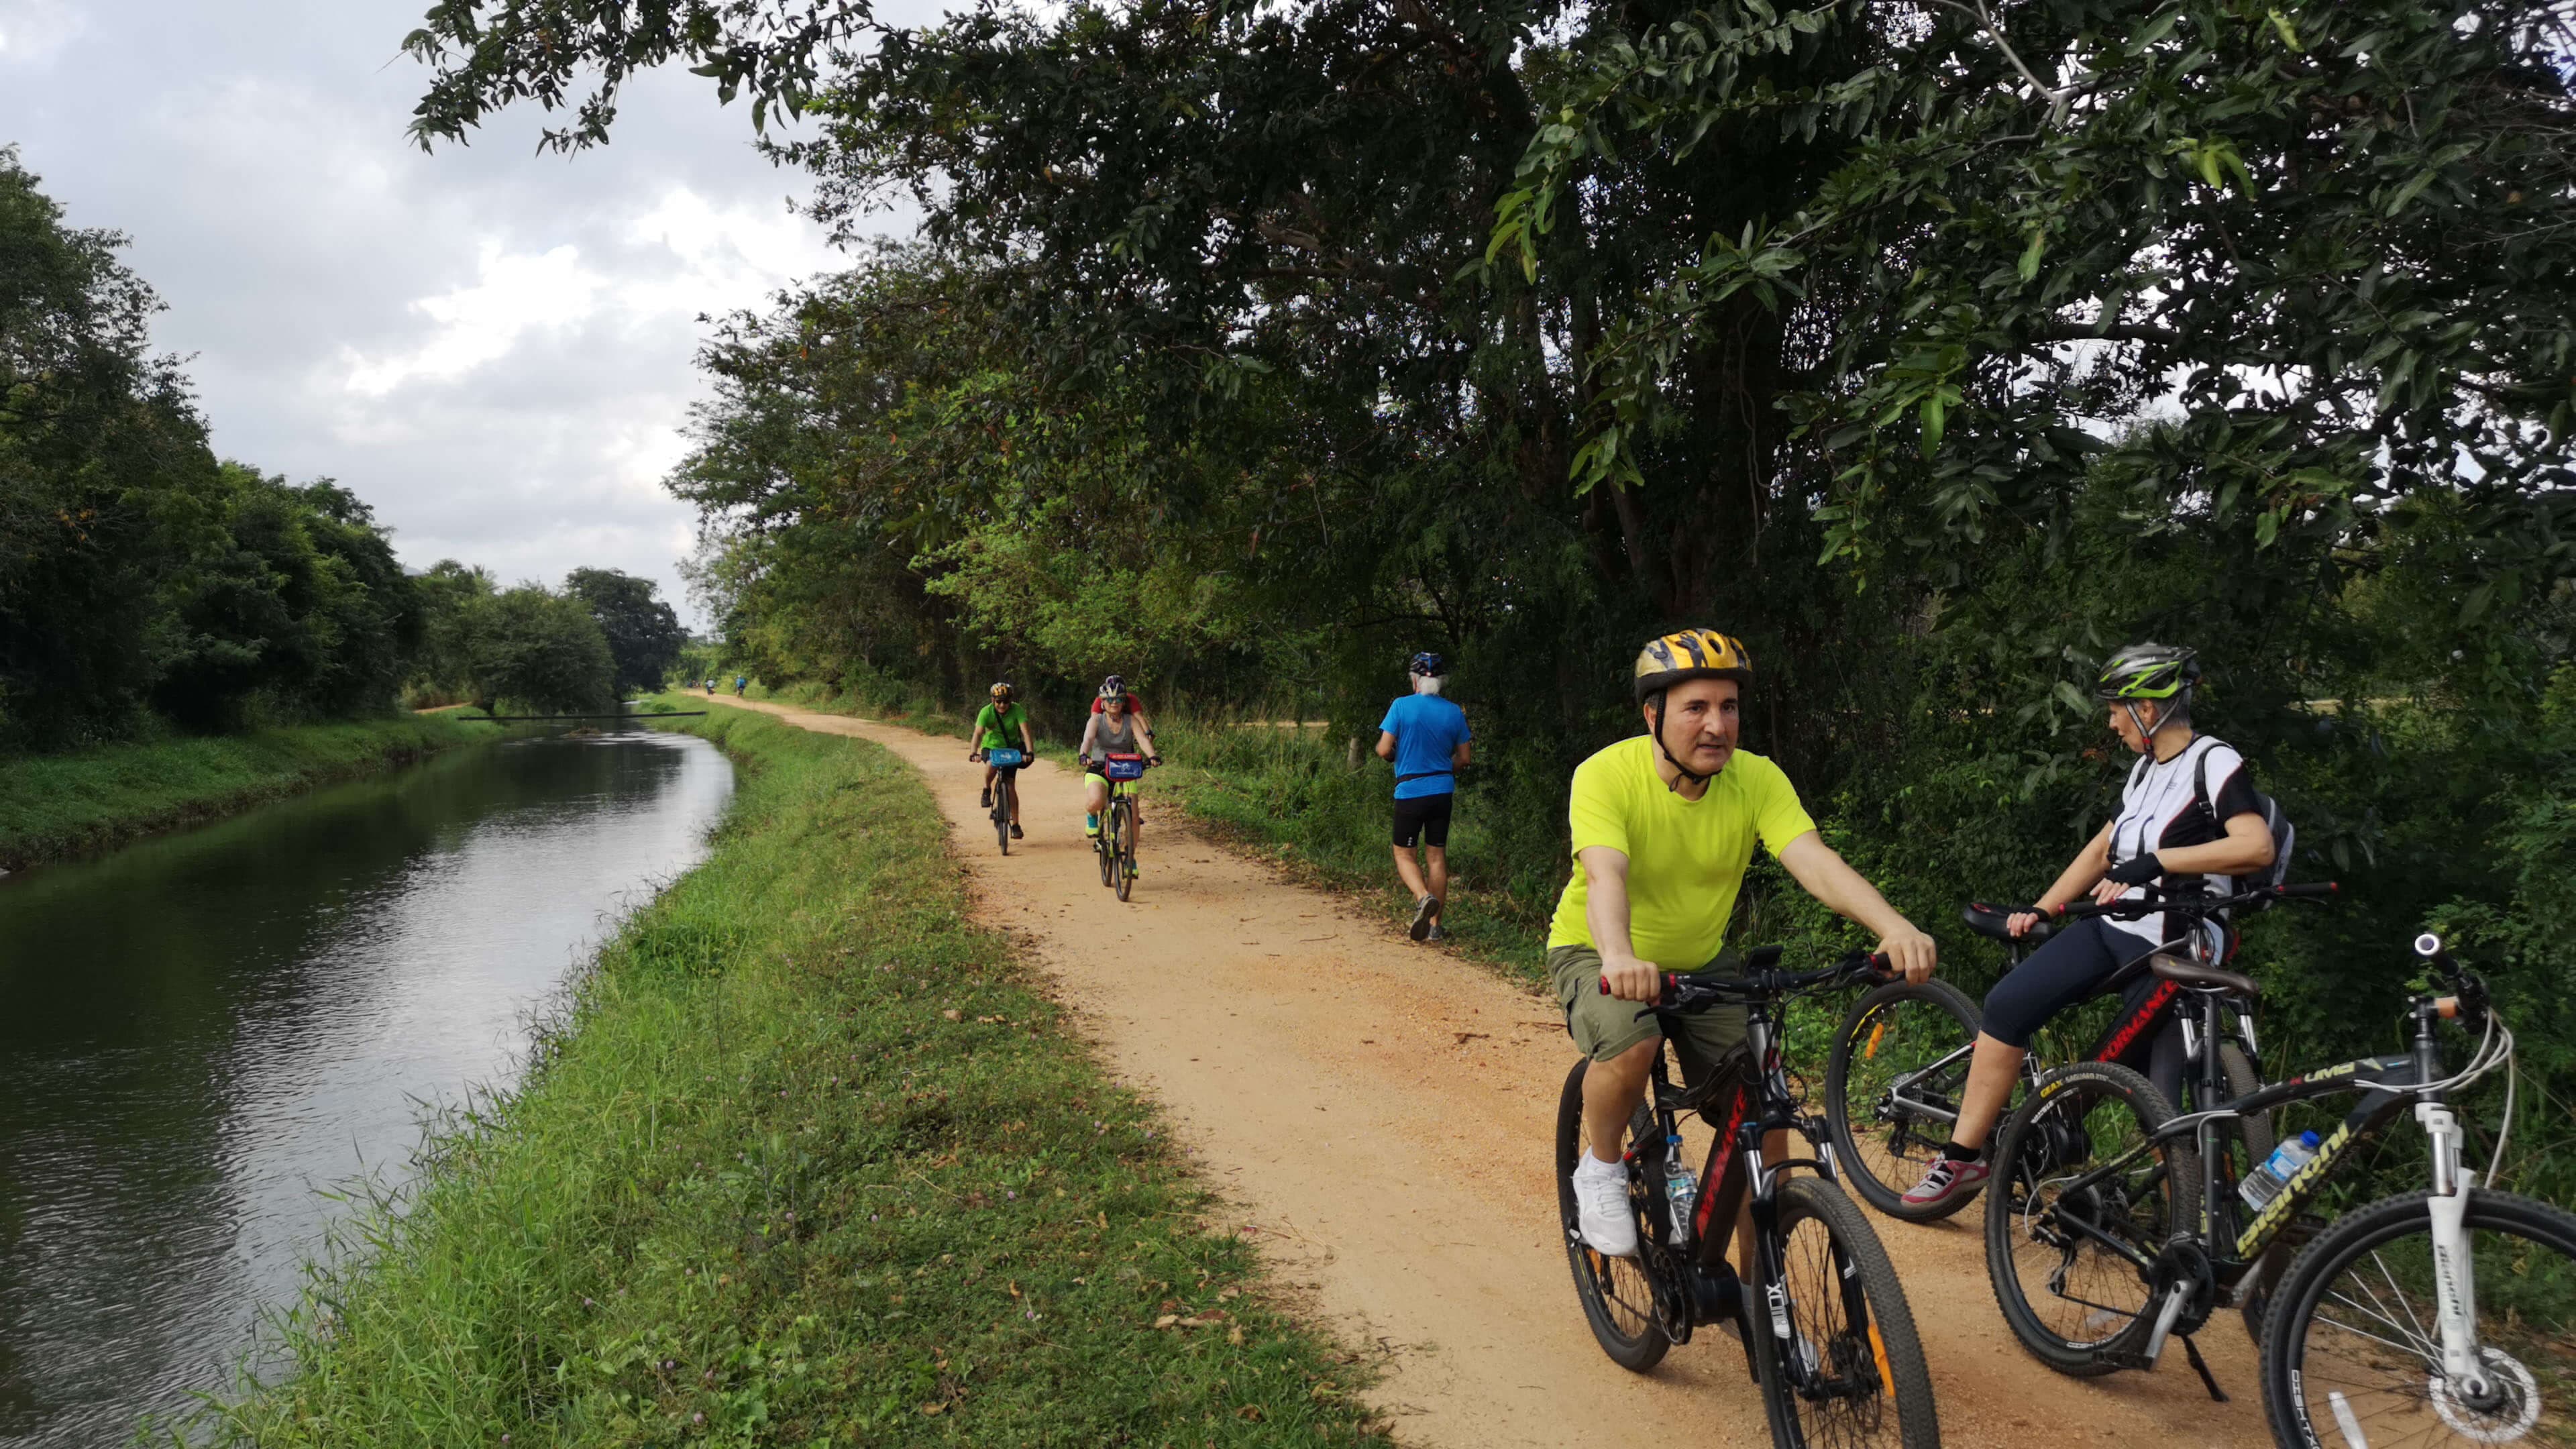 Una imagen de ciclismo cerca de un canal de agua en la hermosa zona de Yala Sri Lanka